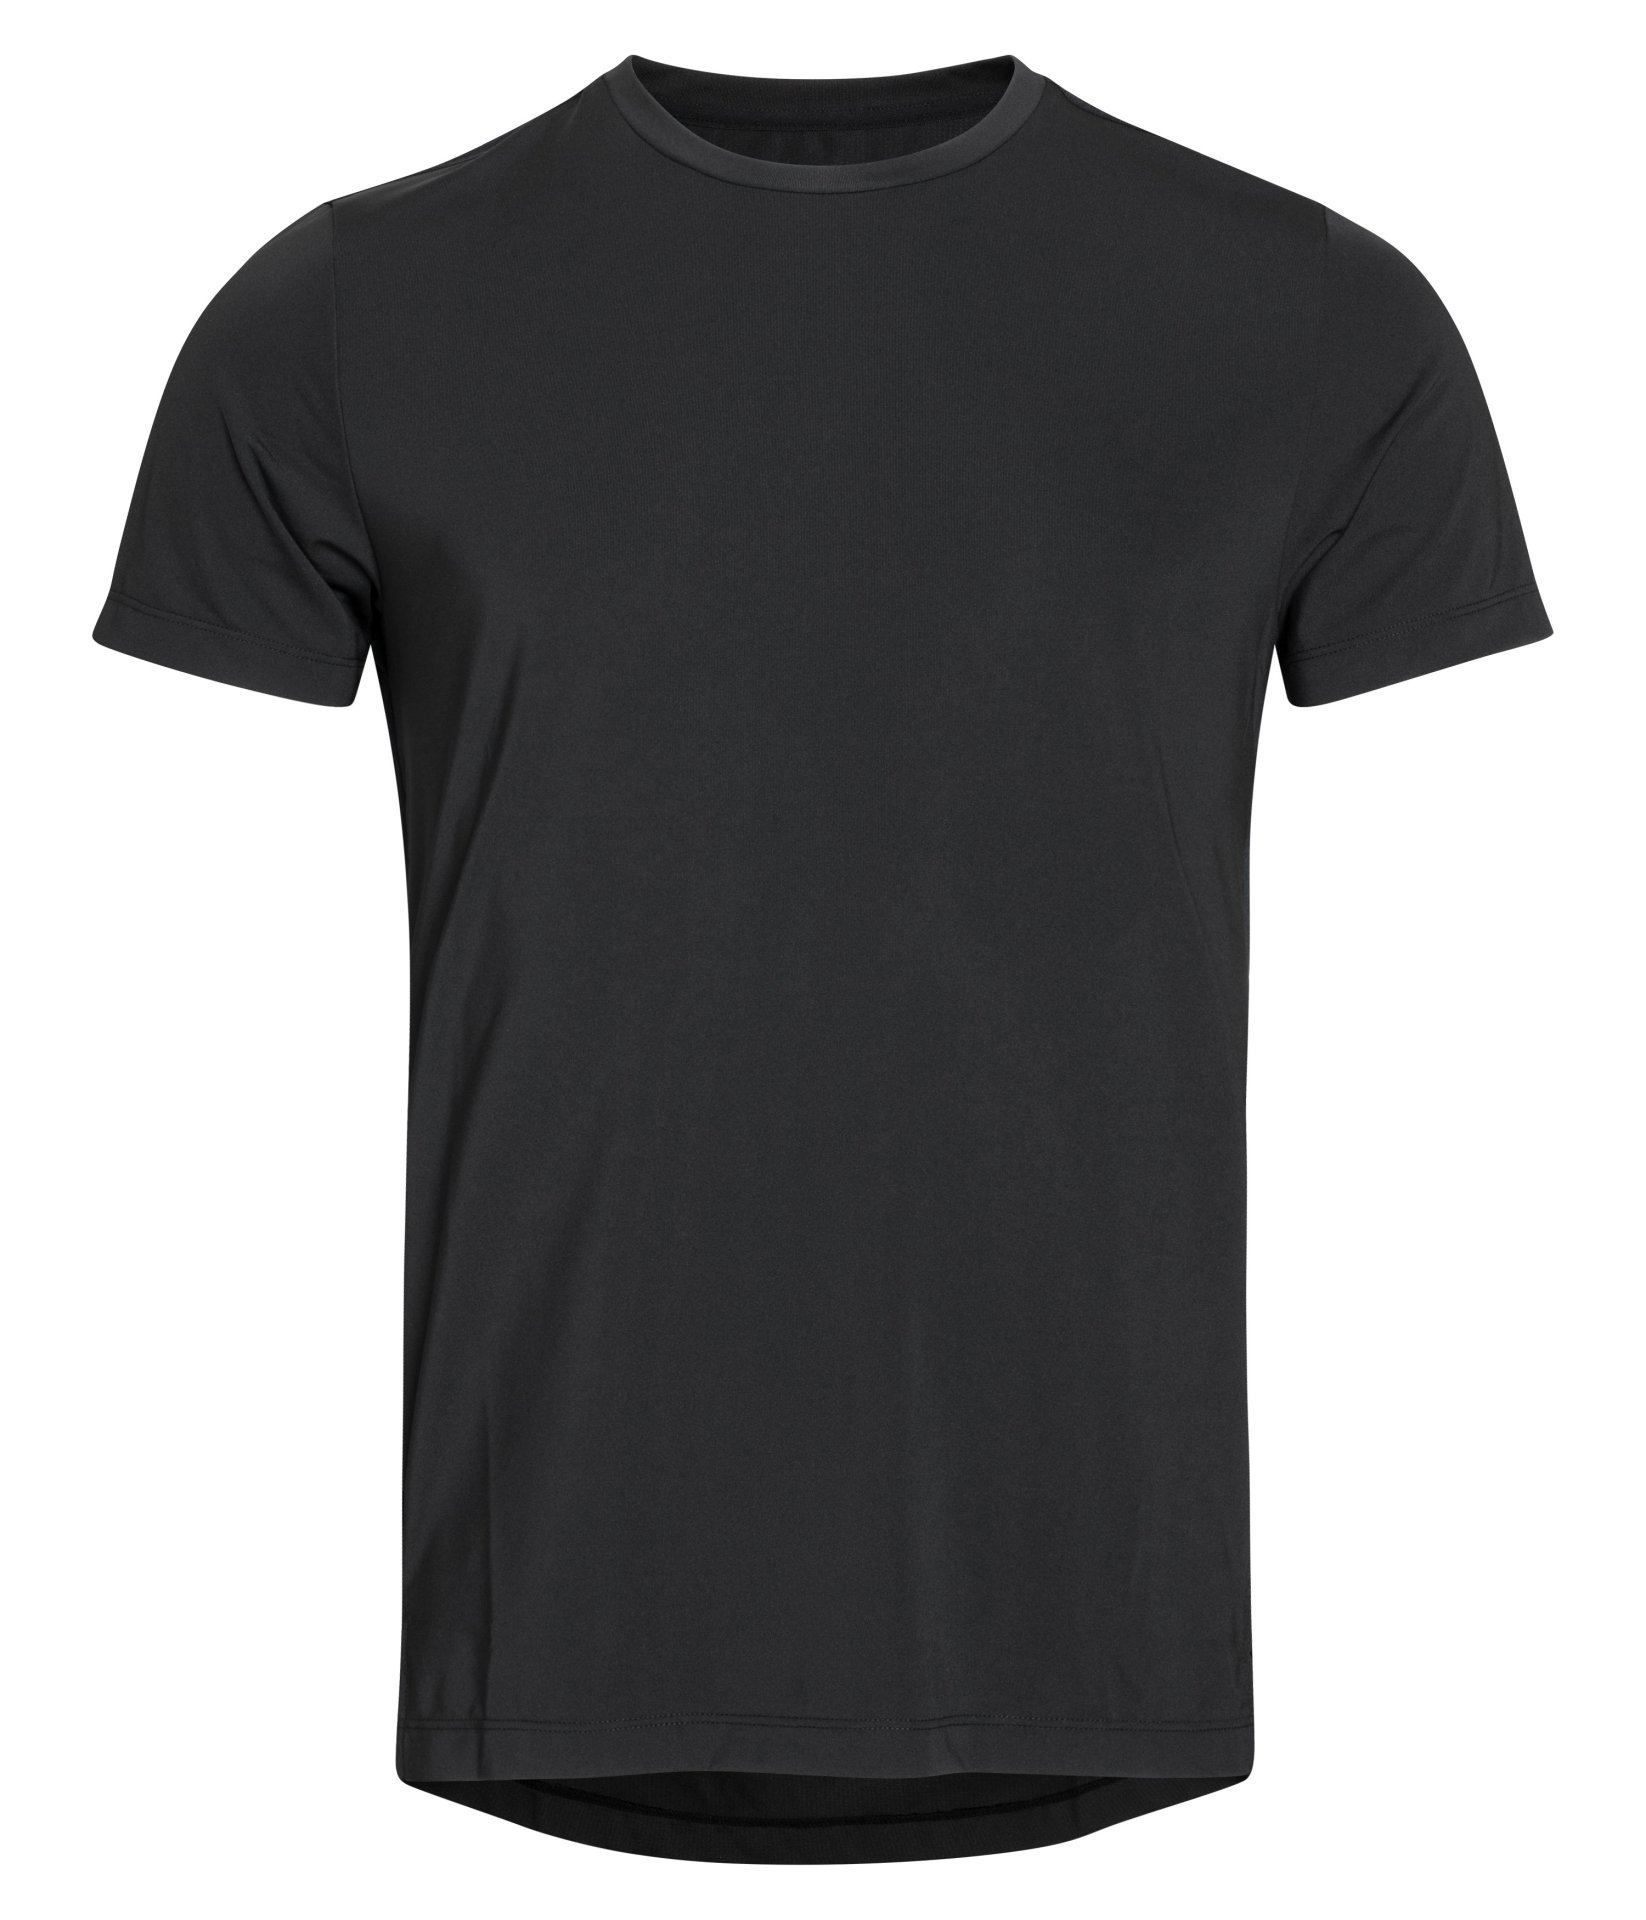 Ανδρικά/Ρούχα/Μπλούζες/Κοντομάνικες BJORN BORG - Ανδρική μπλούζα BJORN BORG μαύρη